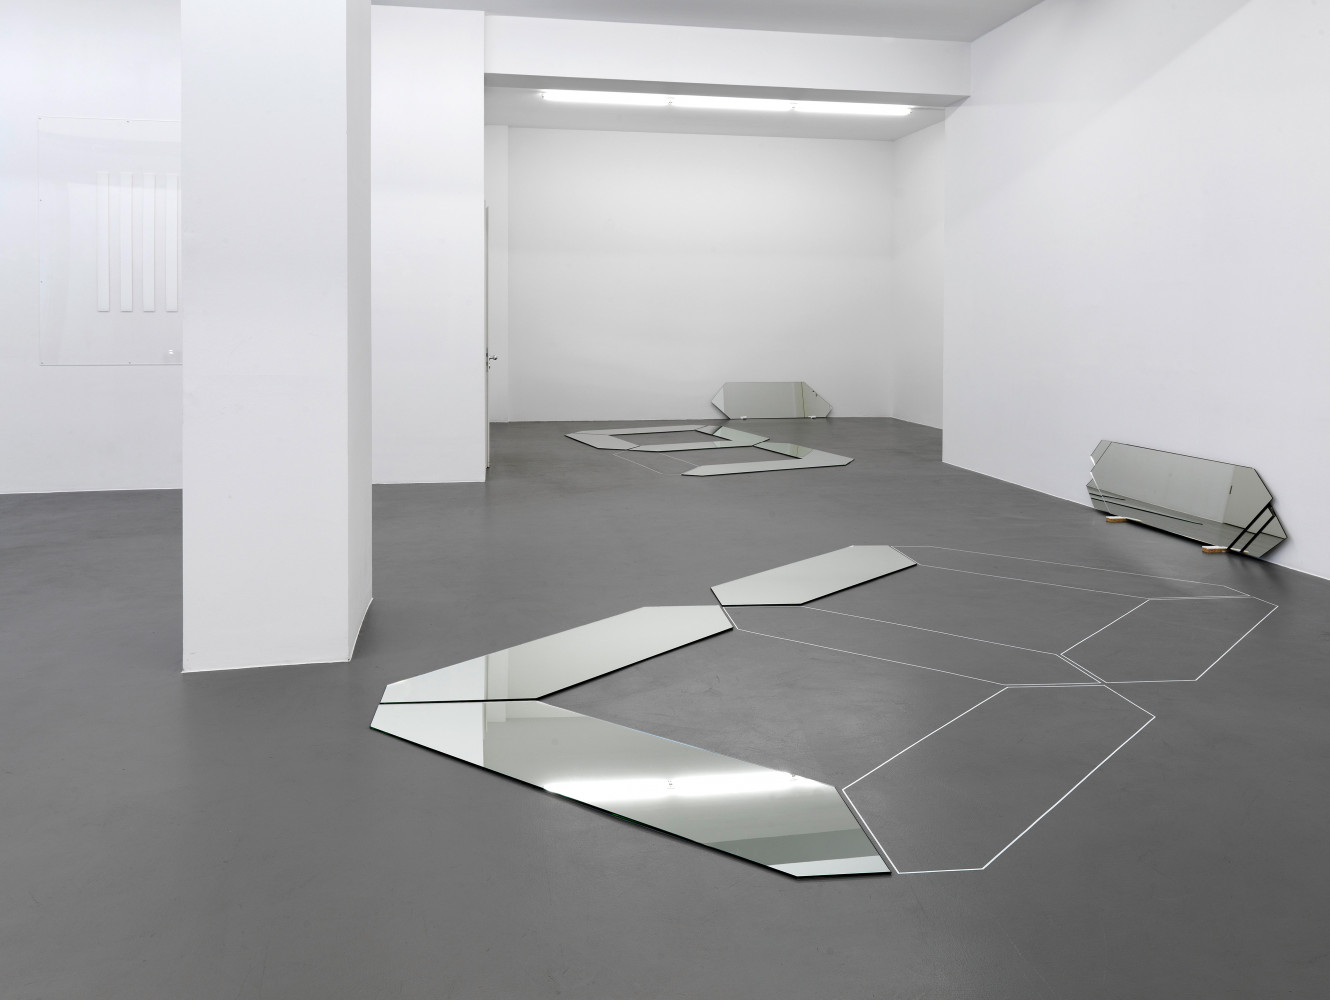 Installation view, Buchmann Galerie, 2012